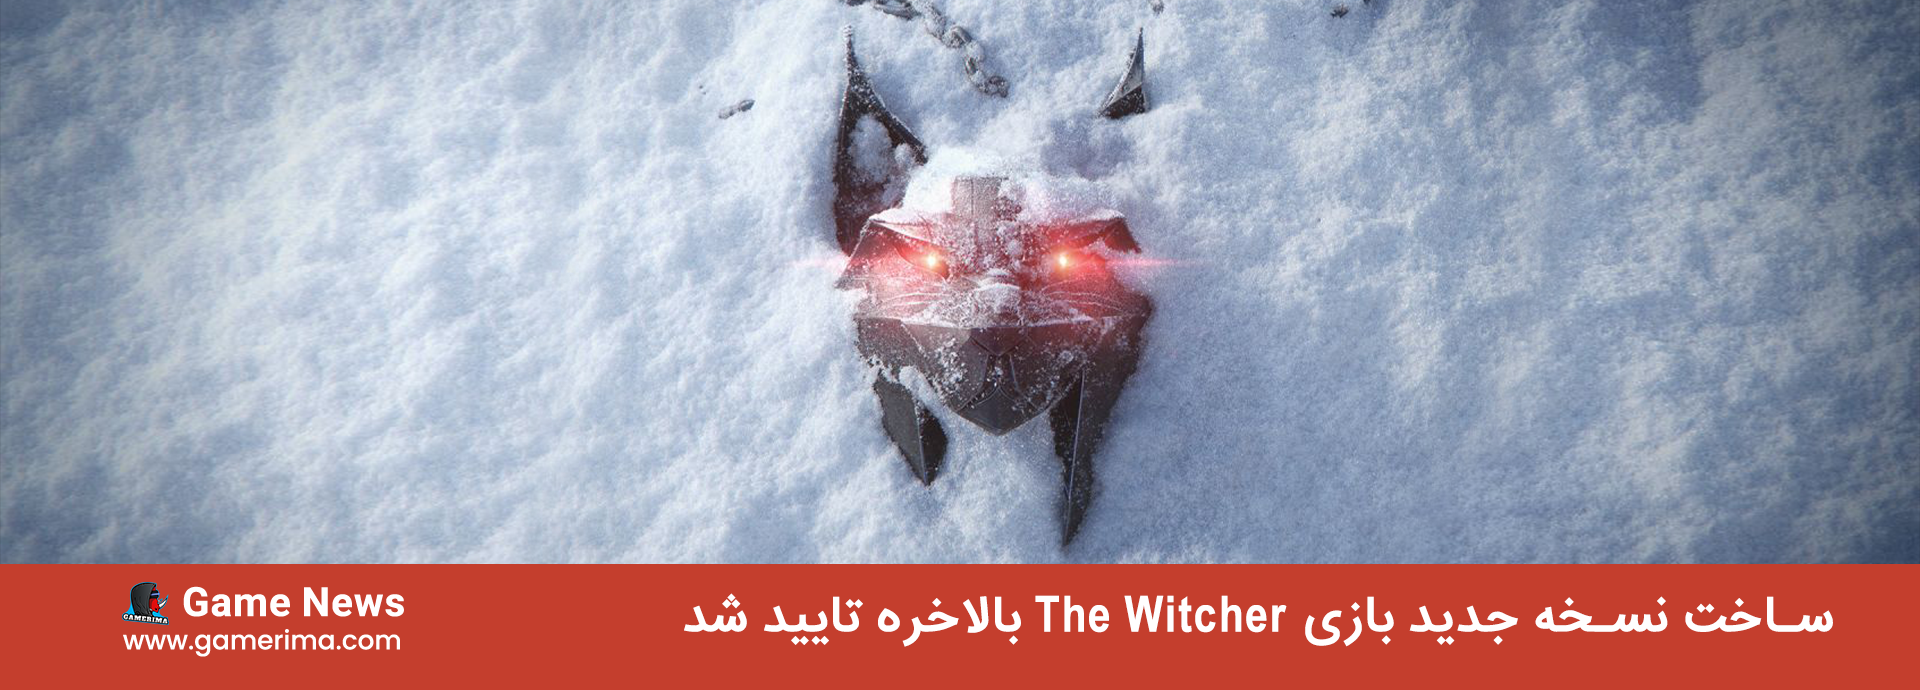 ساخت نسخه جدید The Witcher بالاخره تایید شد